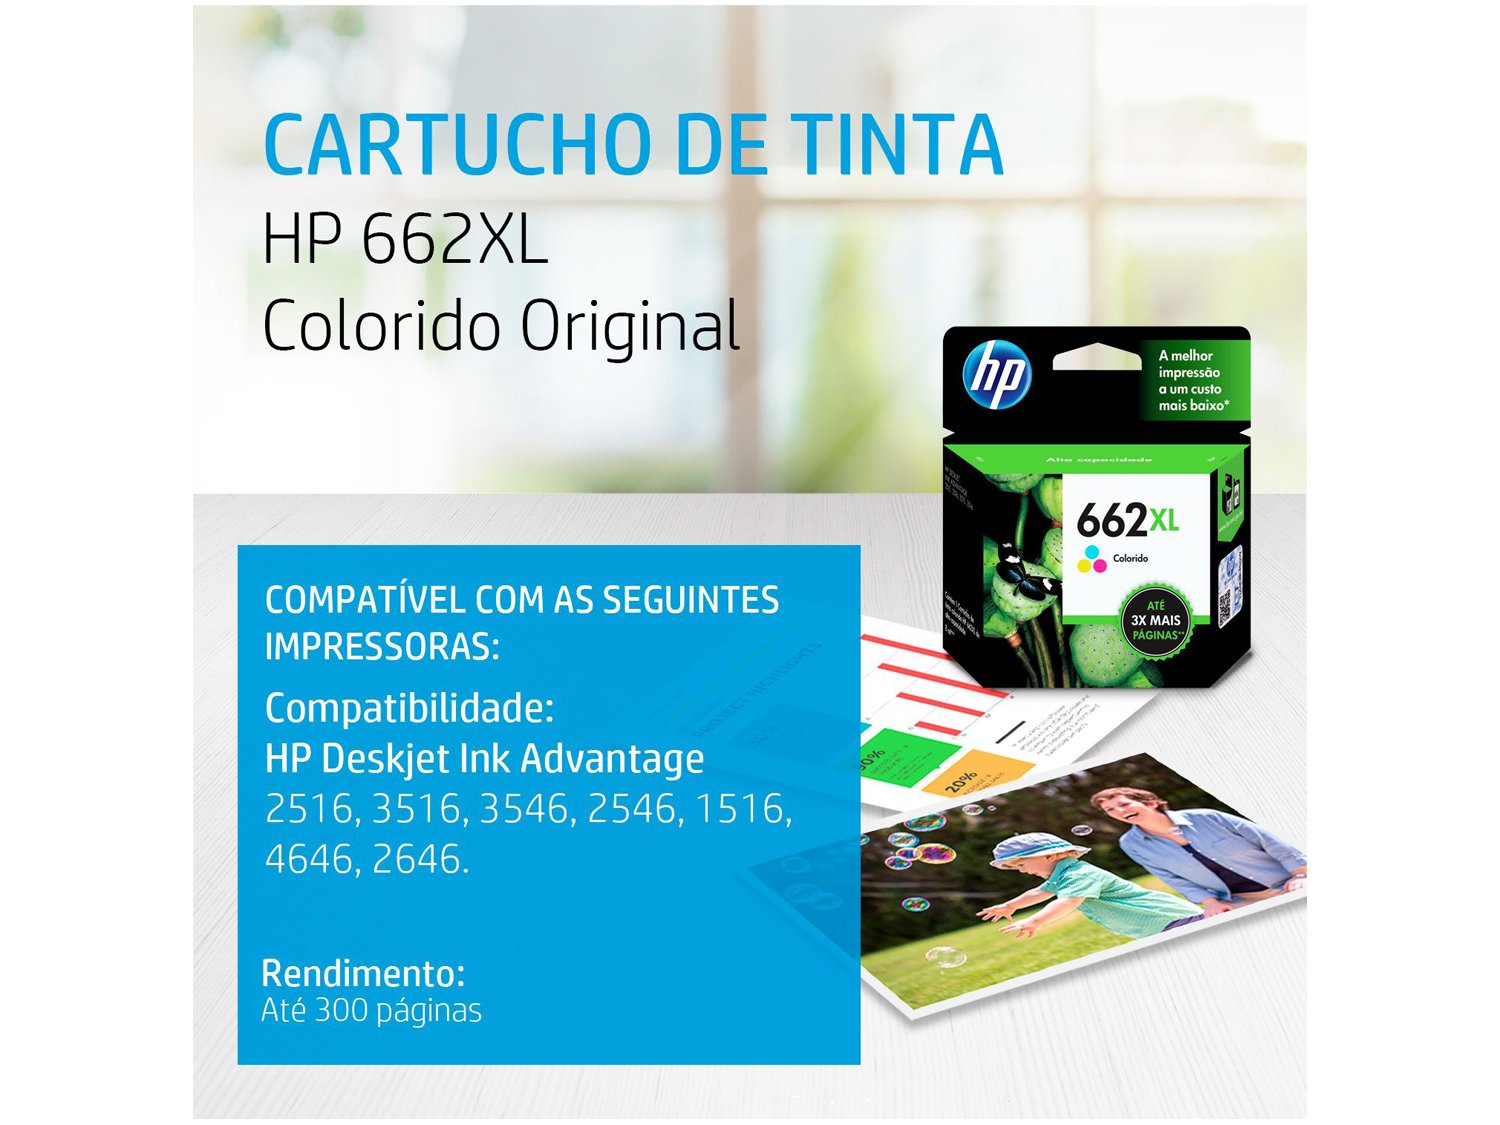 Cartucho de Tinta HP 662XL Colorido - Original - 1